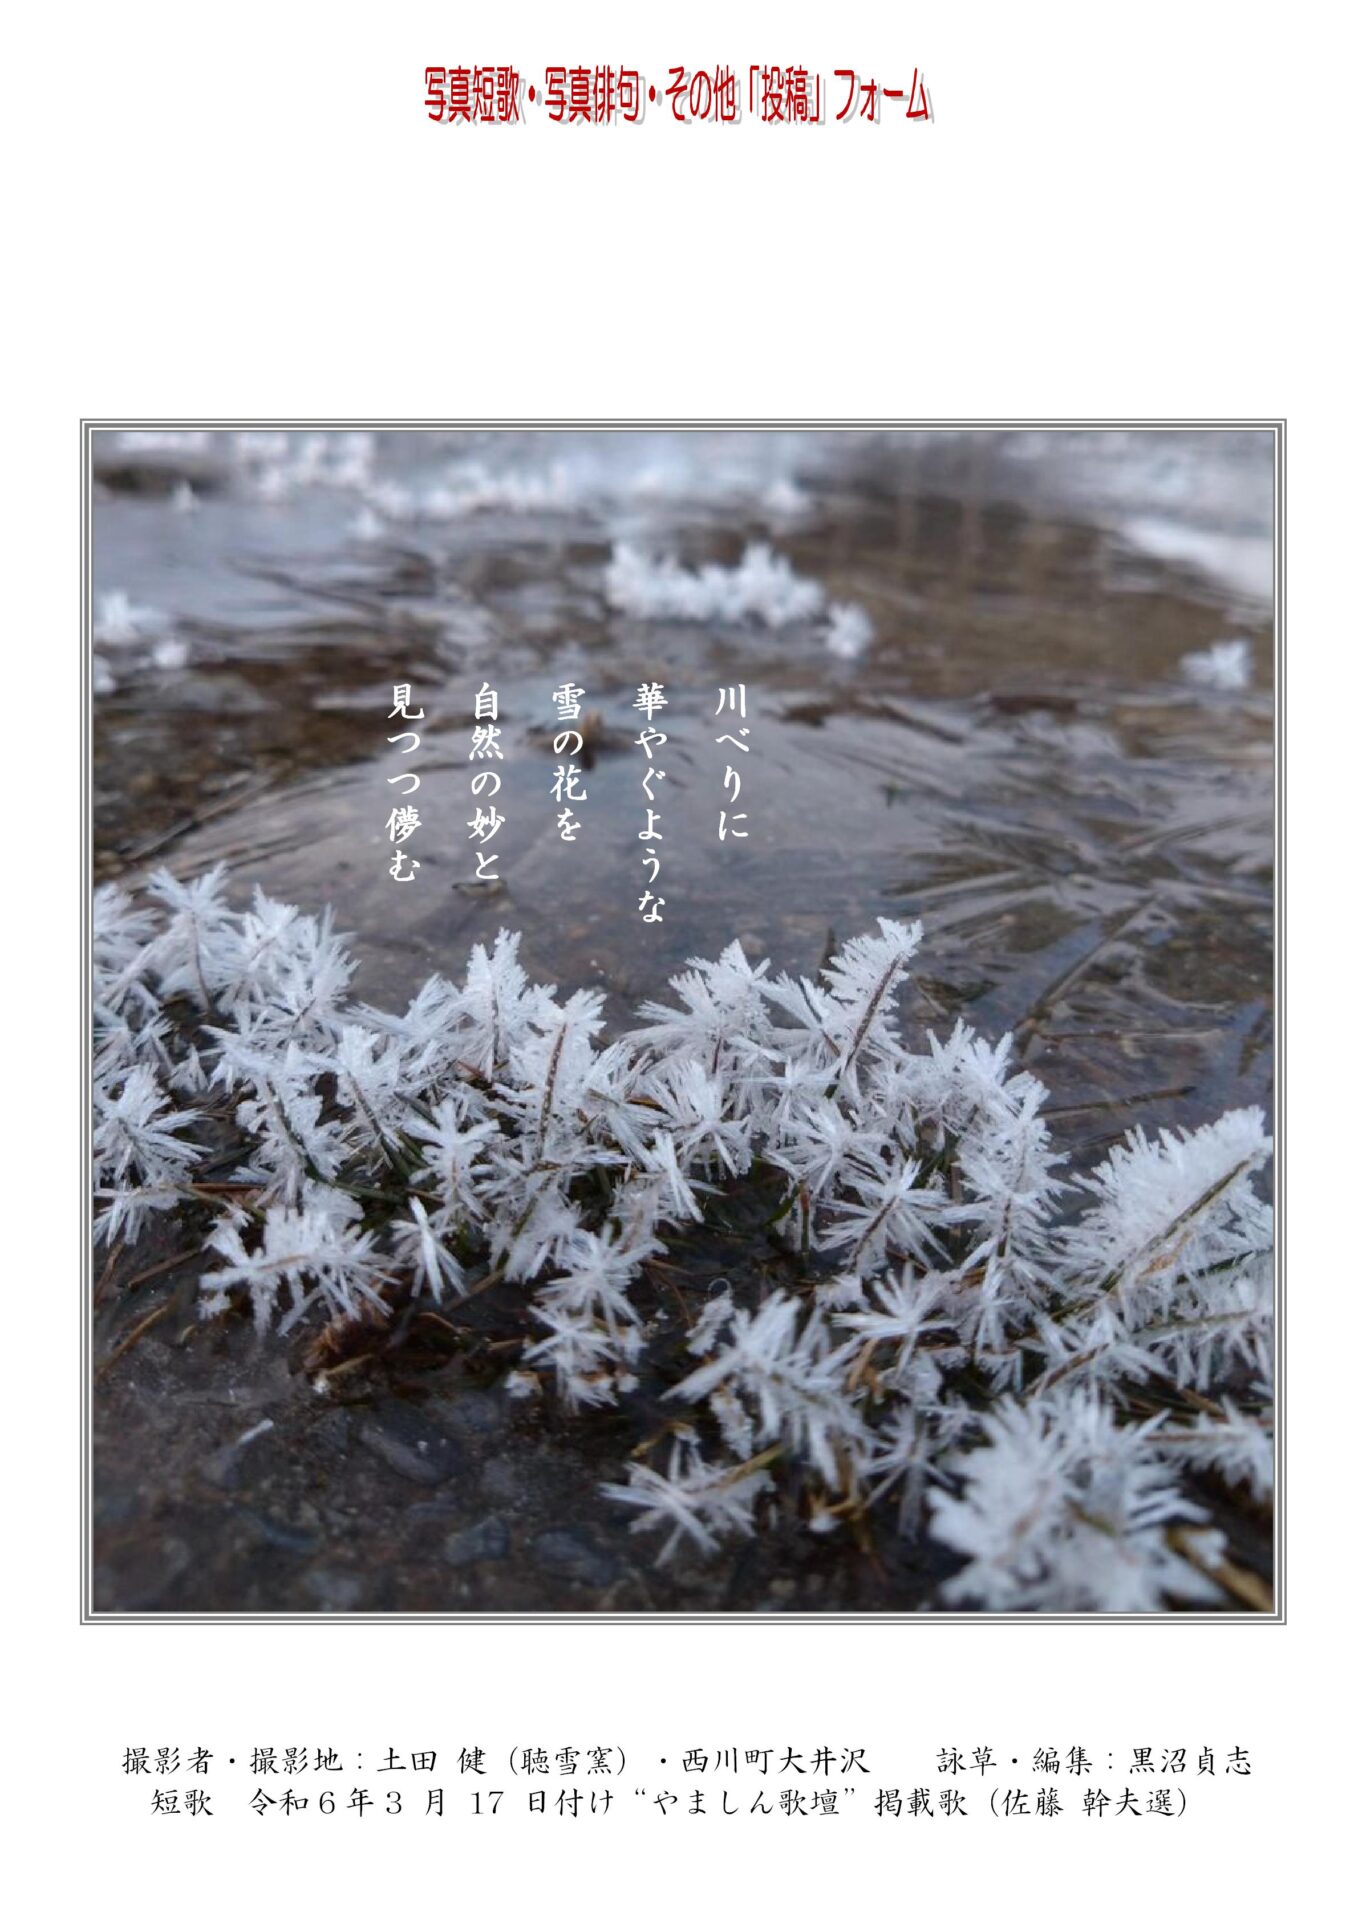 作品番号-４３（共同制作写真短歌）：川べりに華やぐような雪の花を自然の妙と見つつ儚む